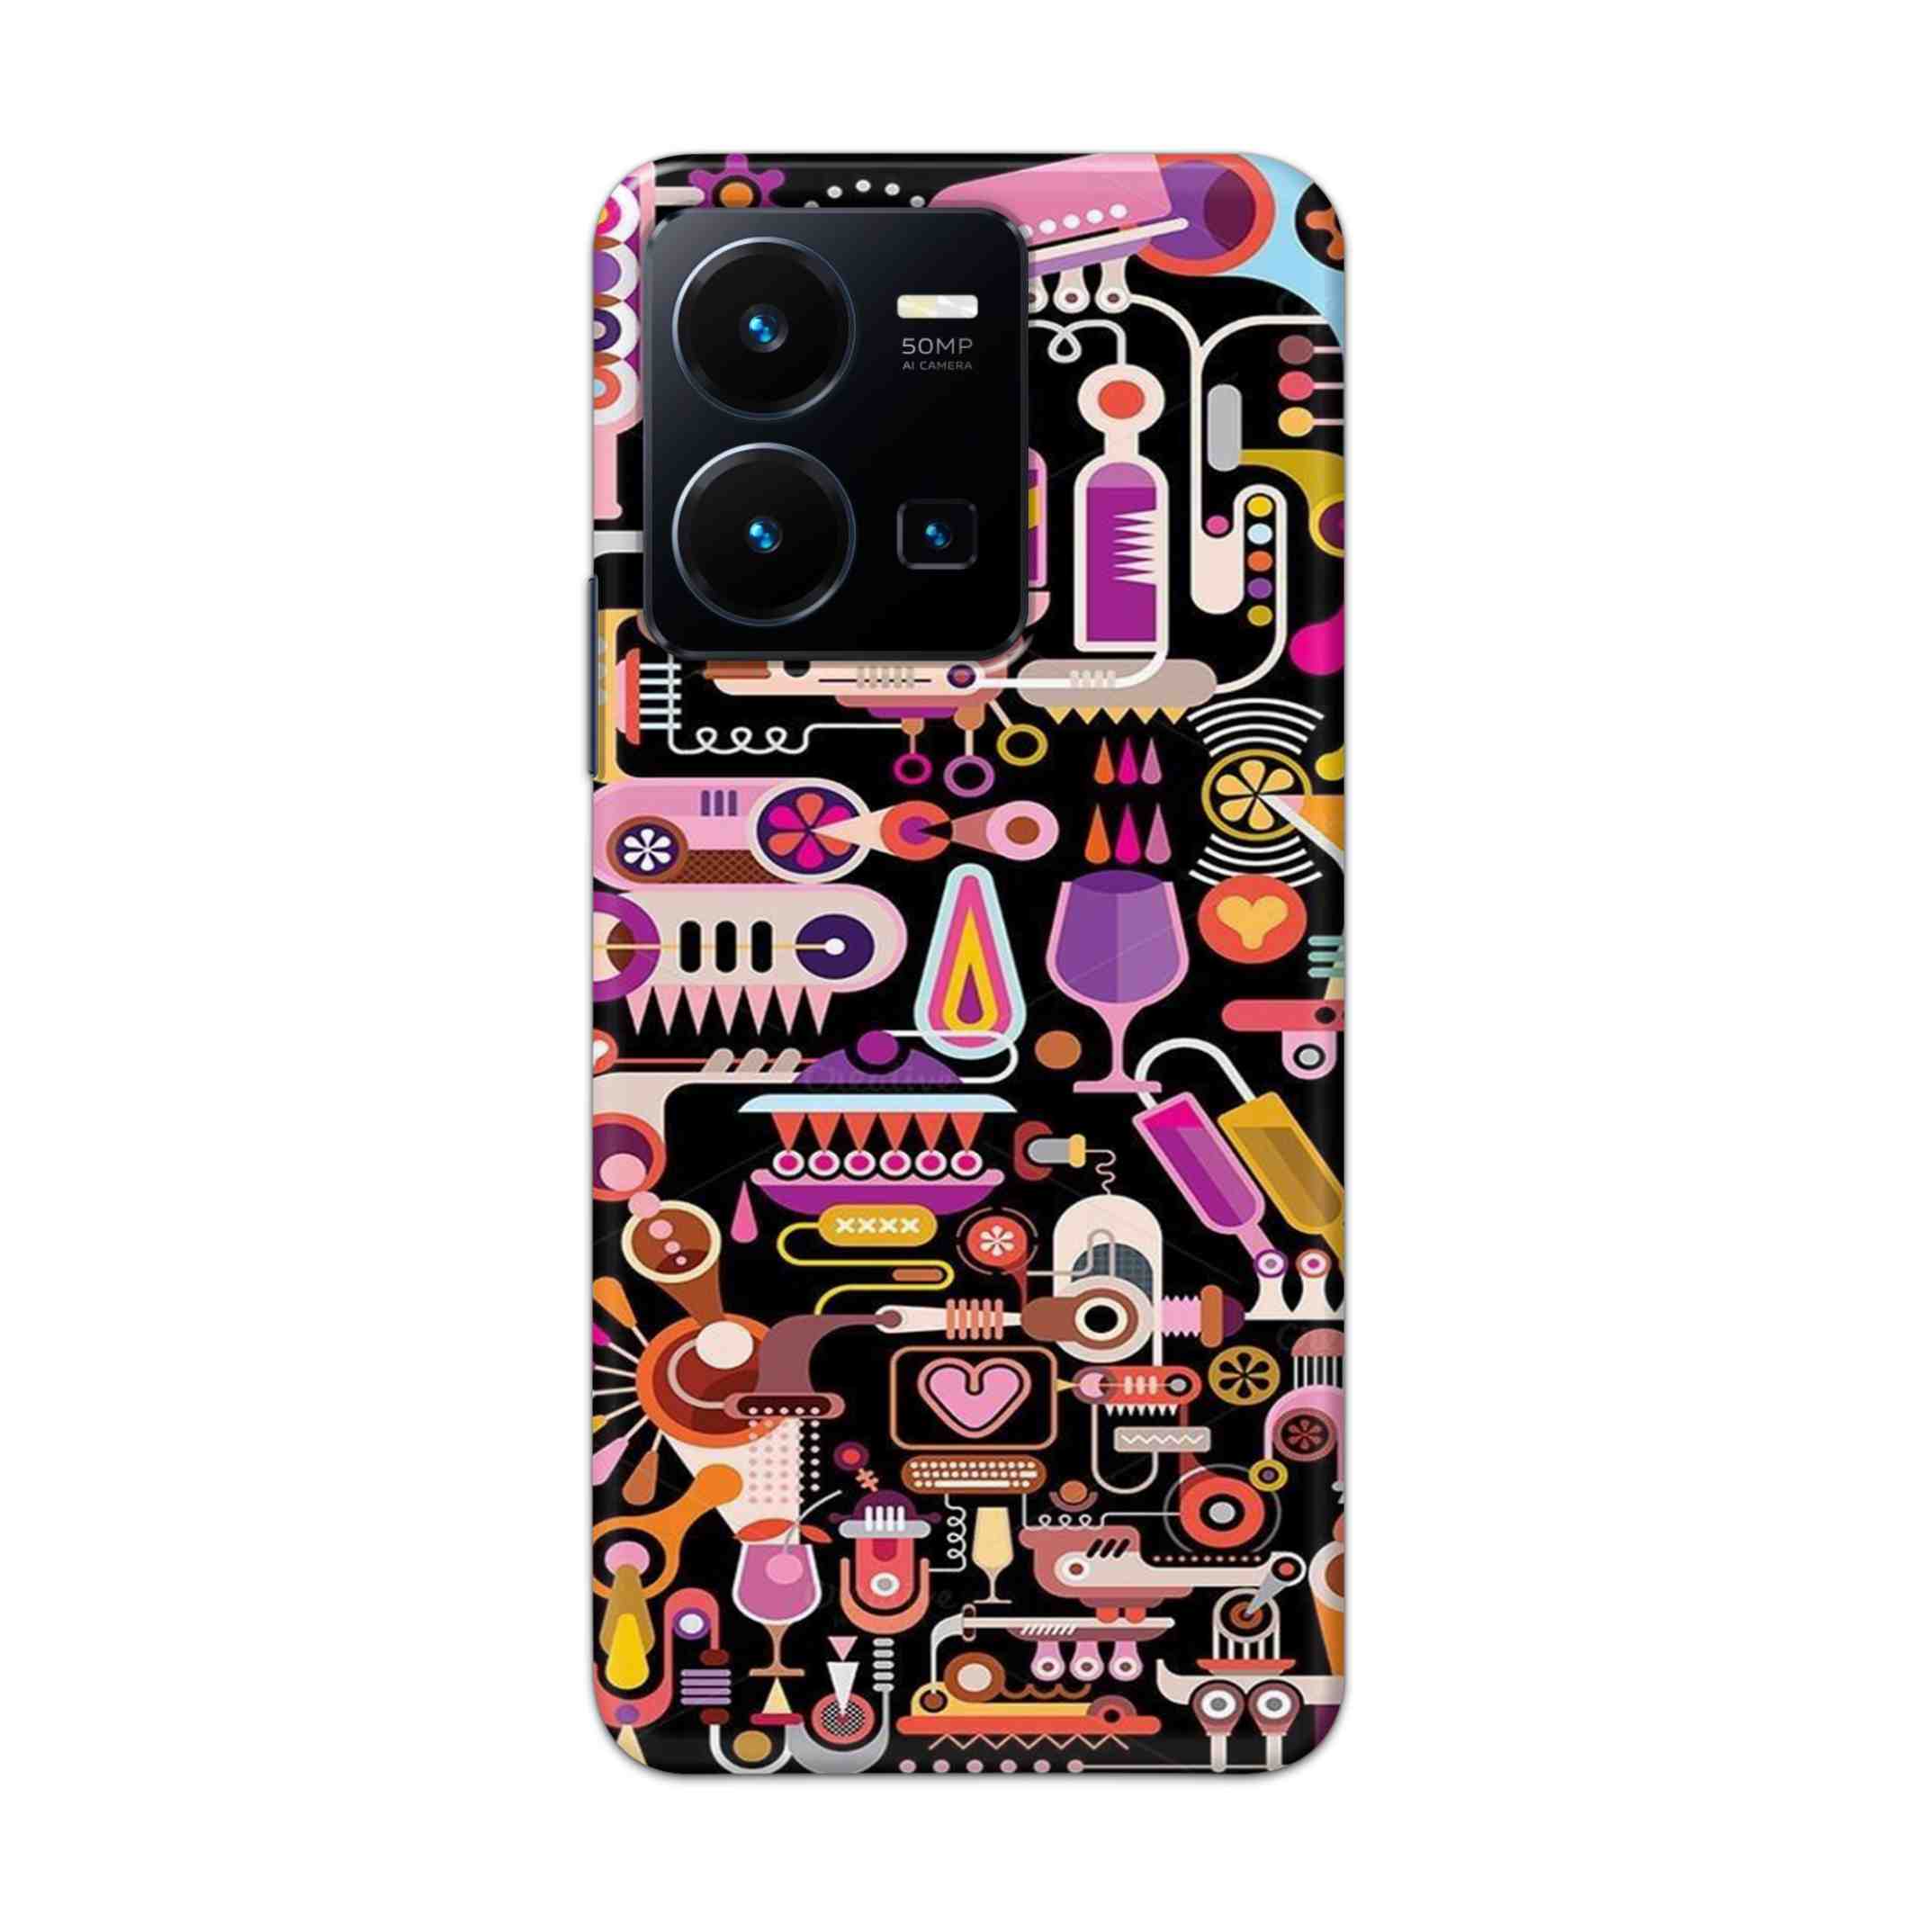 Buy Lab Art Hard Back Mobile Phone Case Cover For Vivo Y35 2022 Online